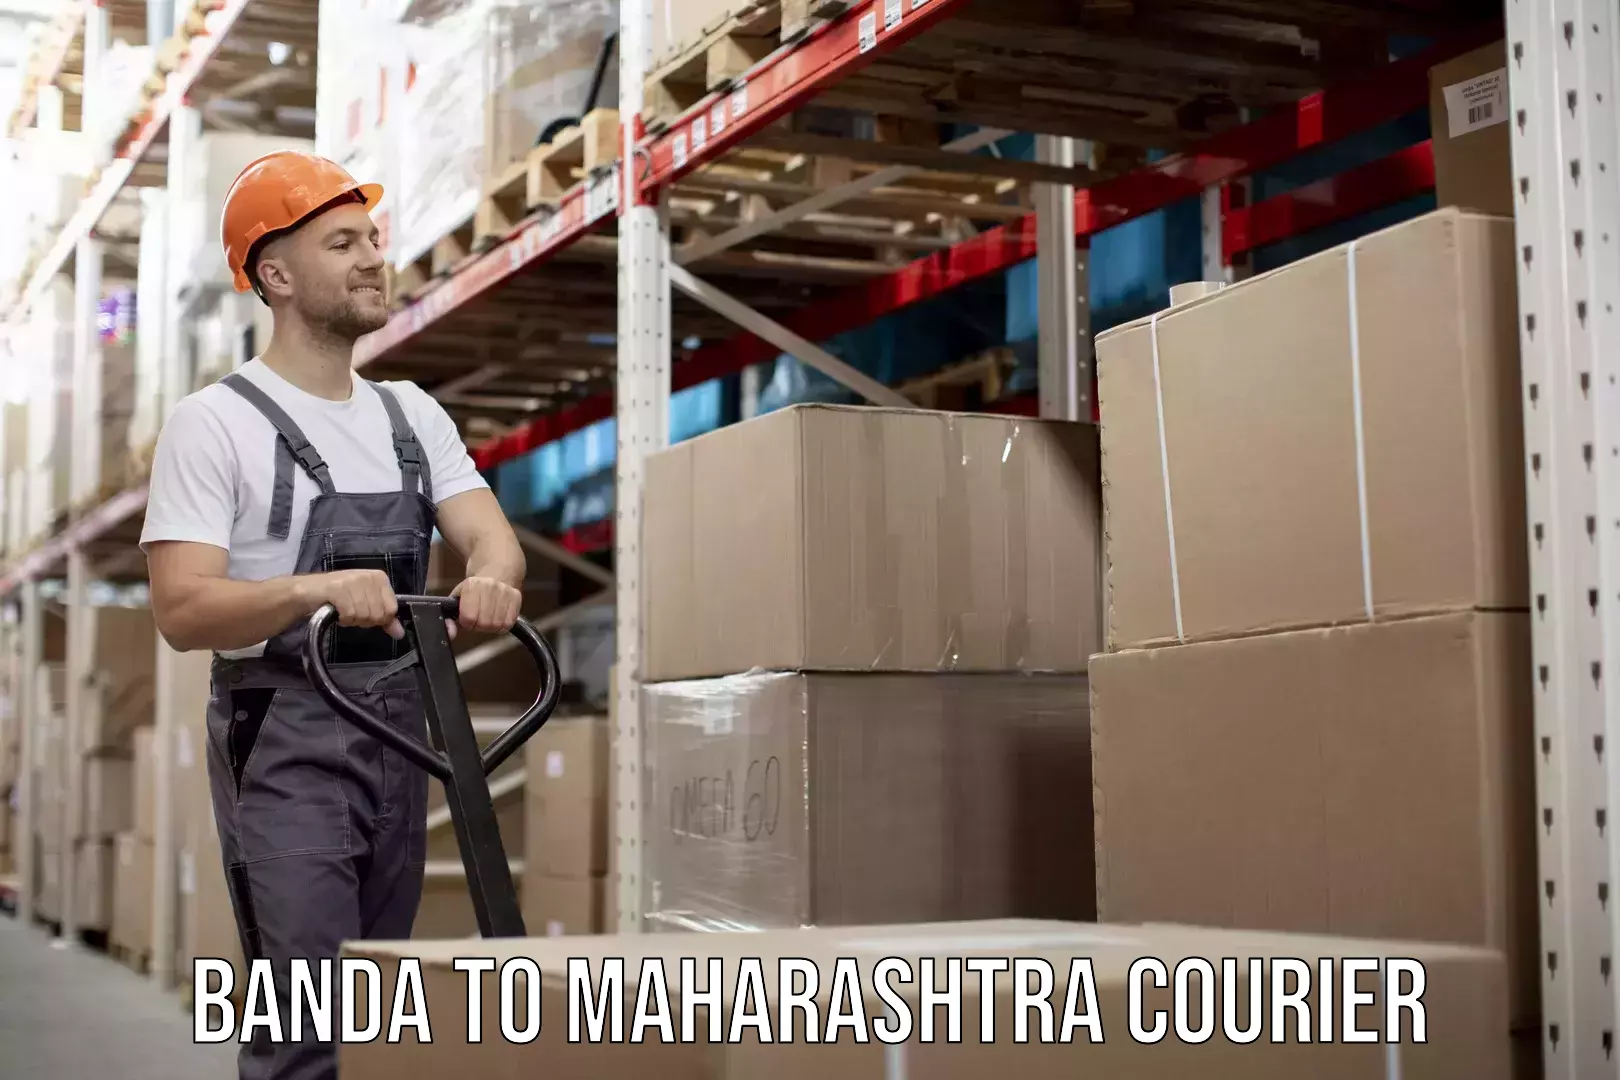 Local delivery service Banda to Maharashtra